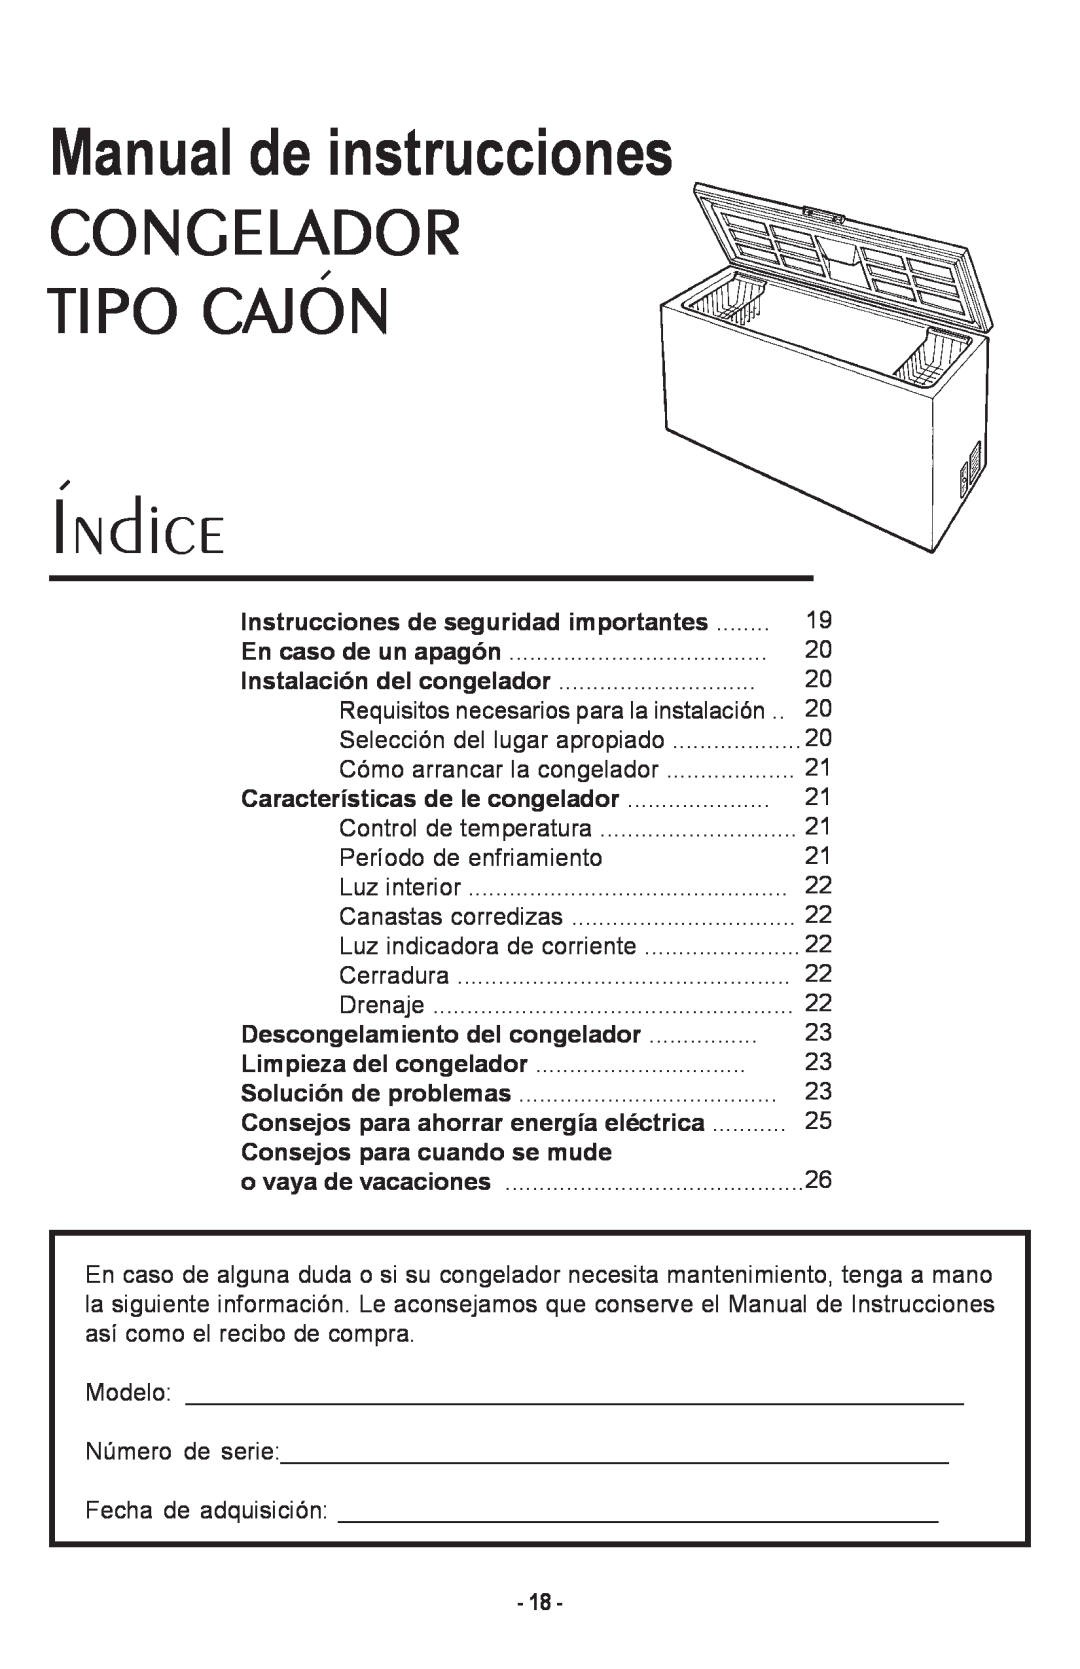 Danby DCF1014WE owner manual Manual de instrucciones CONGELADOR TIPO CAJON, Indice, Instrucciones de seguridad importantes 